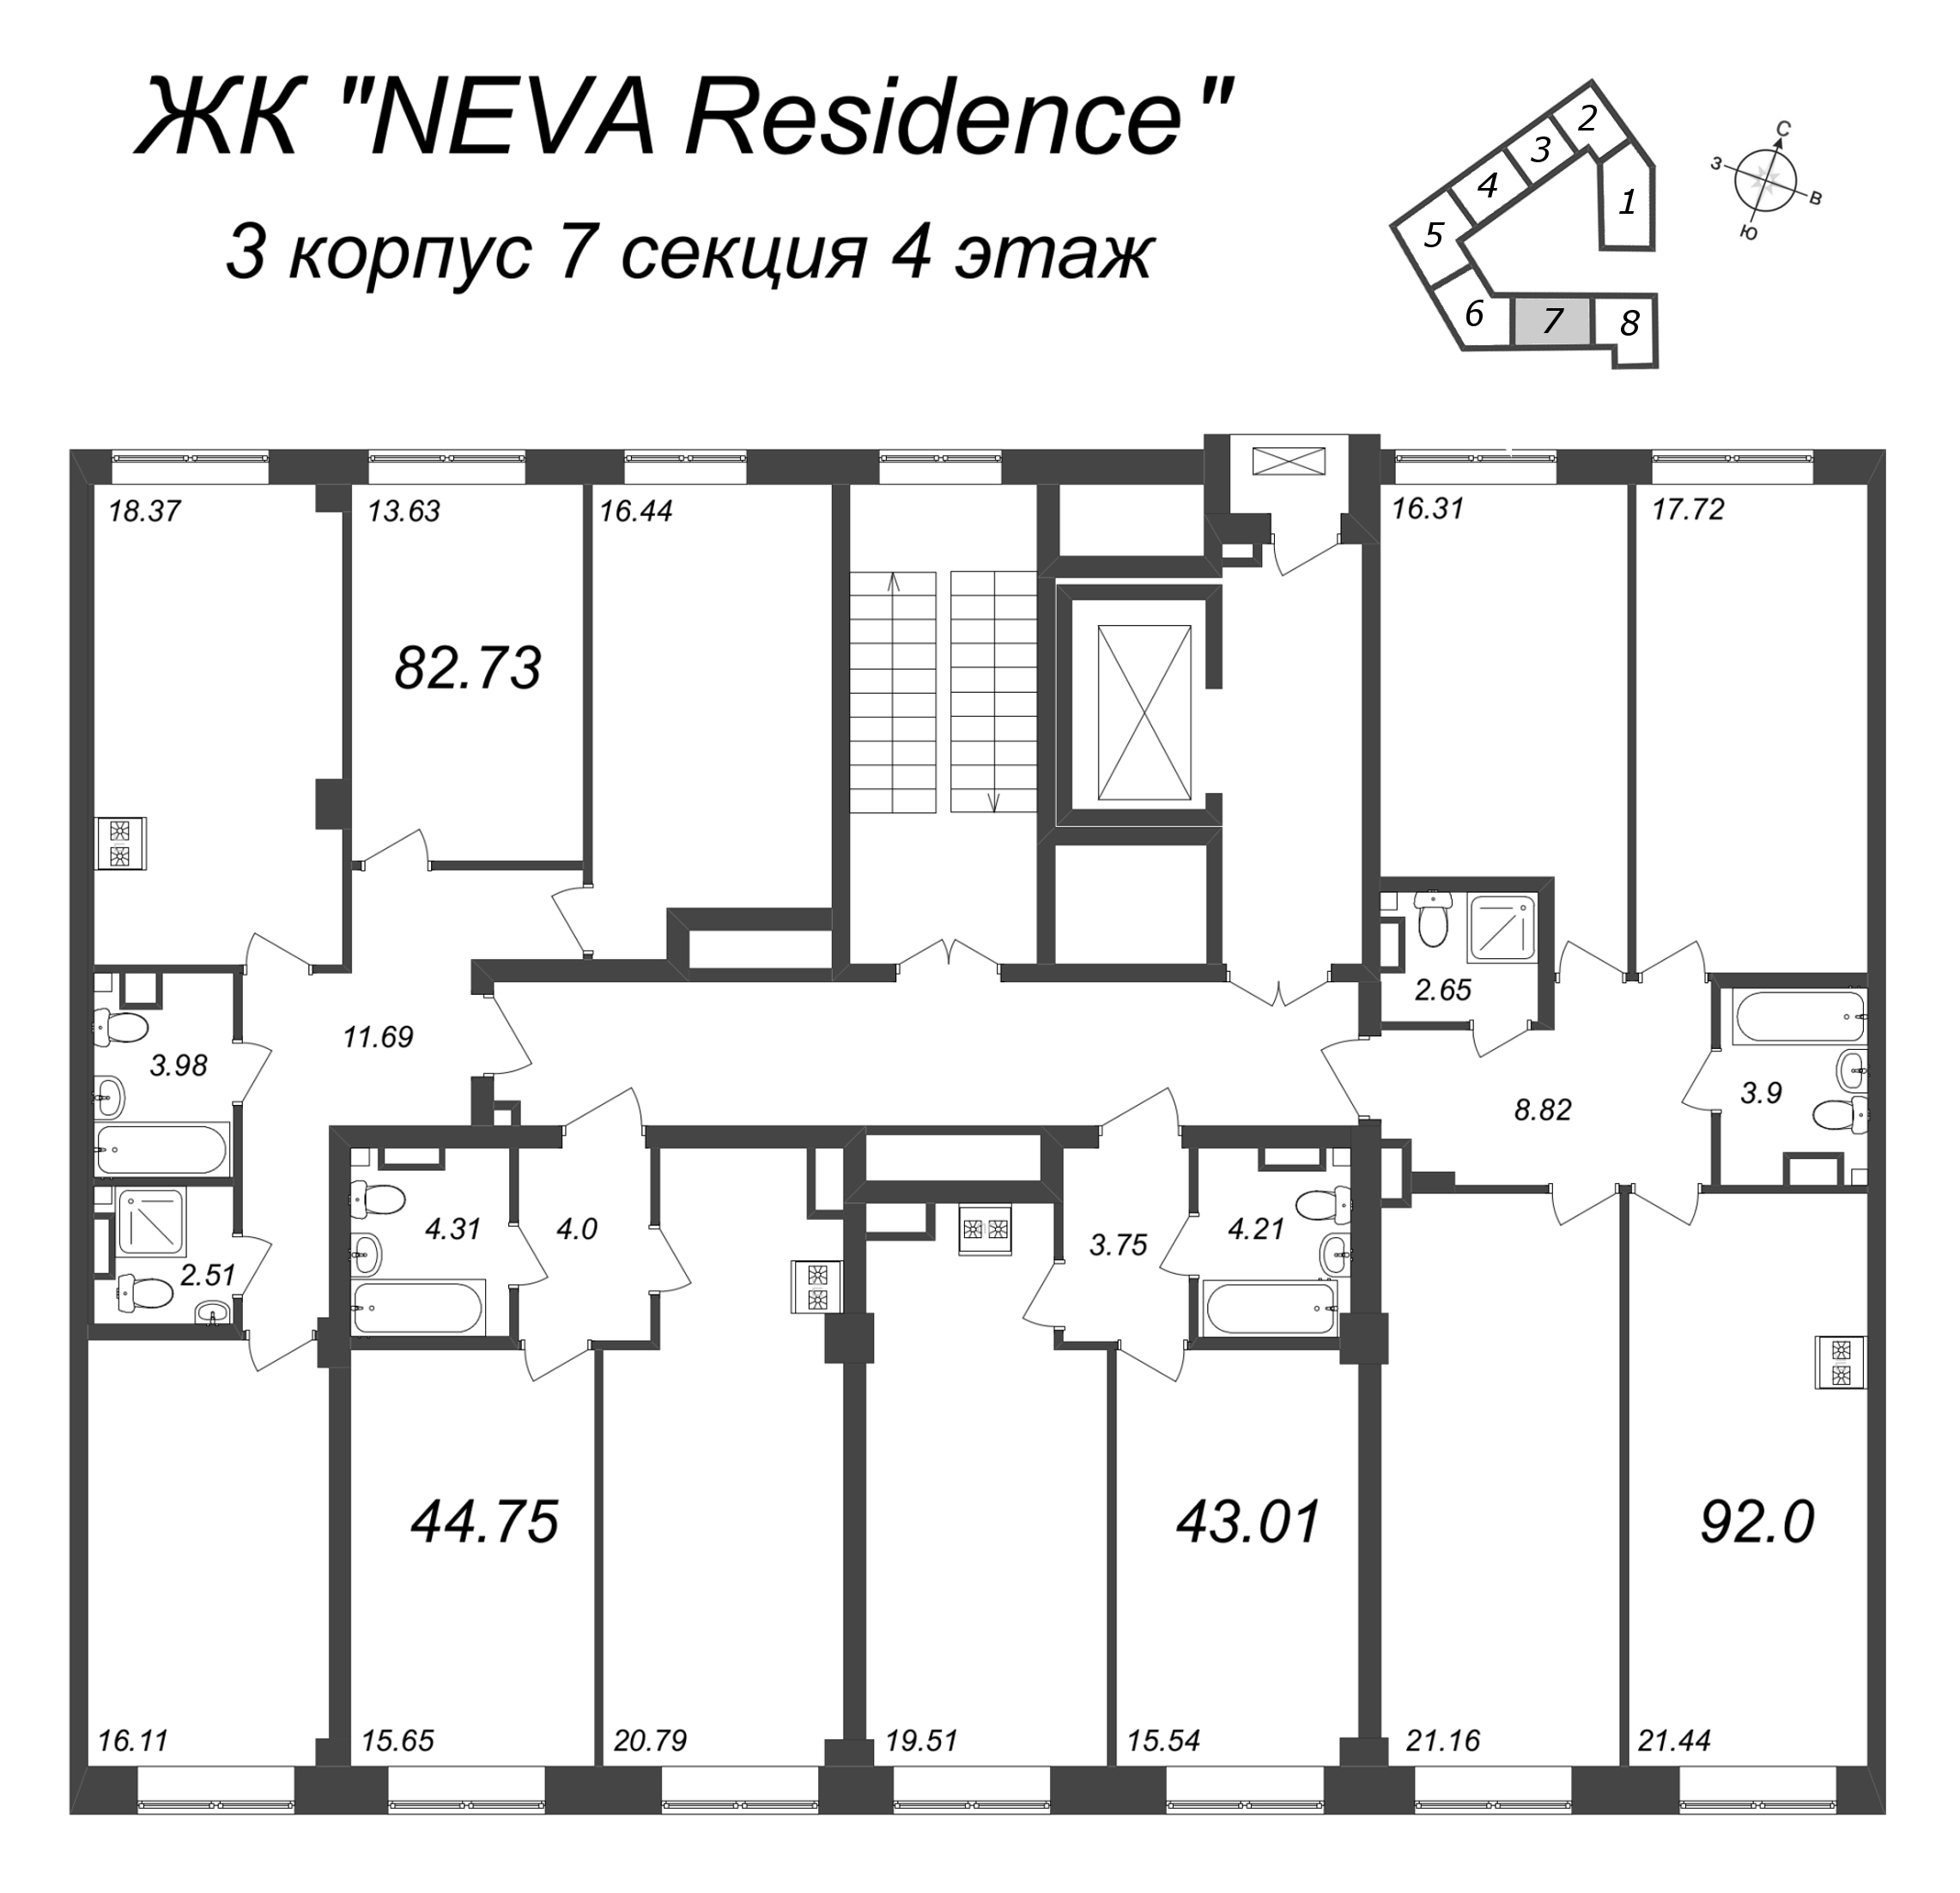 2-комнатная (Евро) квартира, 43.01 м² в ЖК "Neva Residence" - планировка этажа